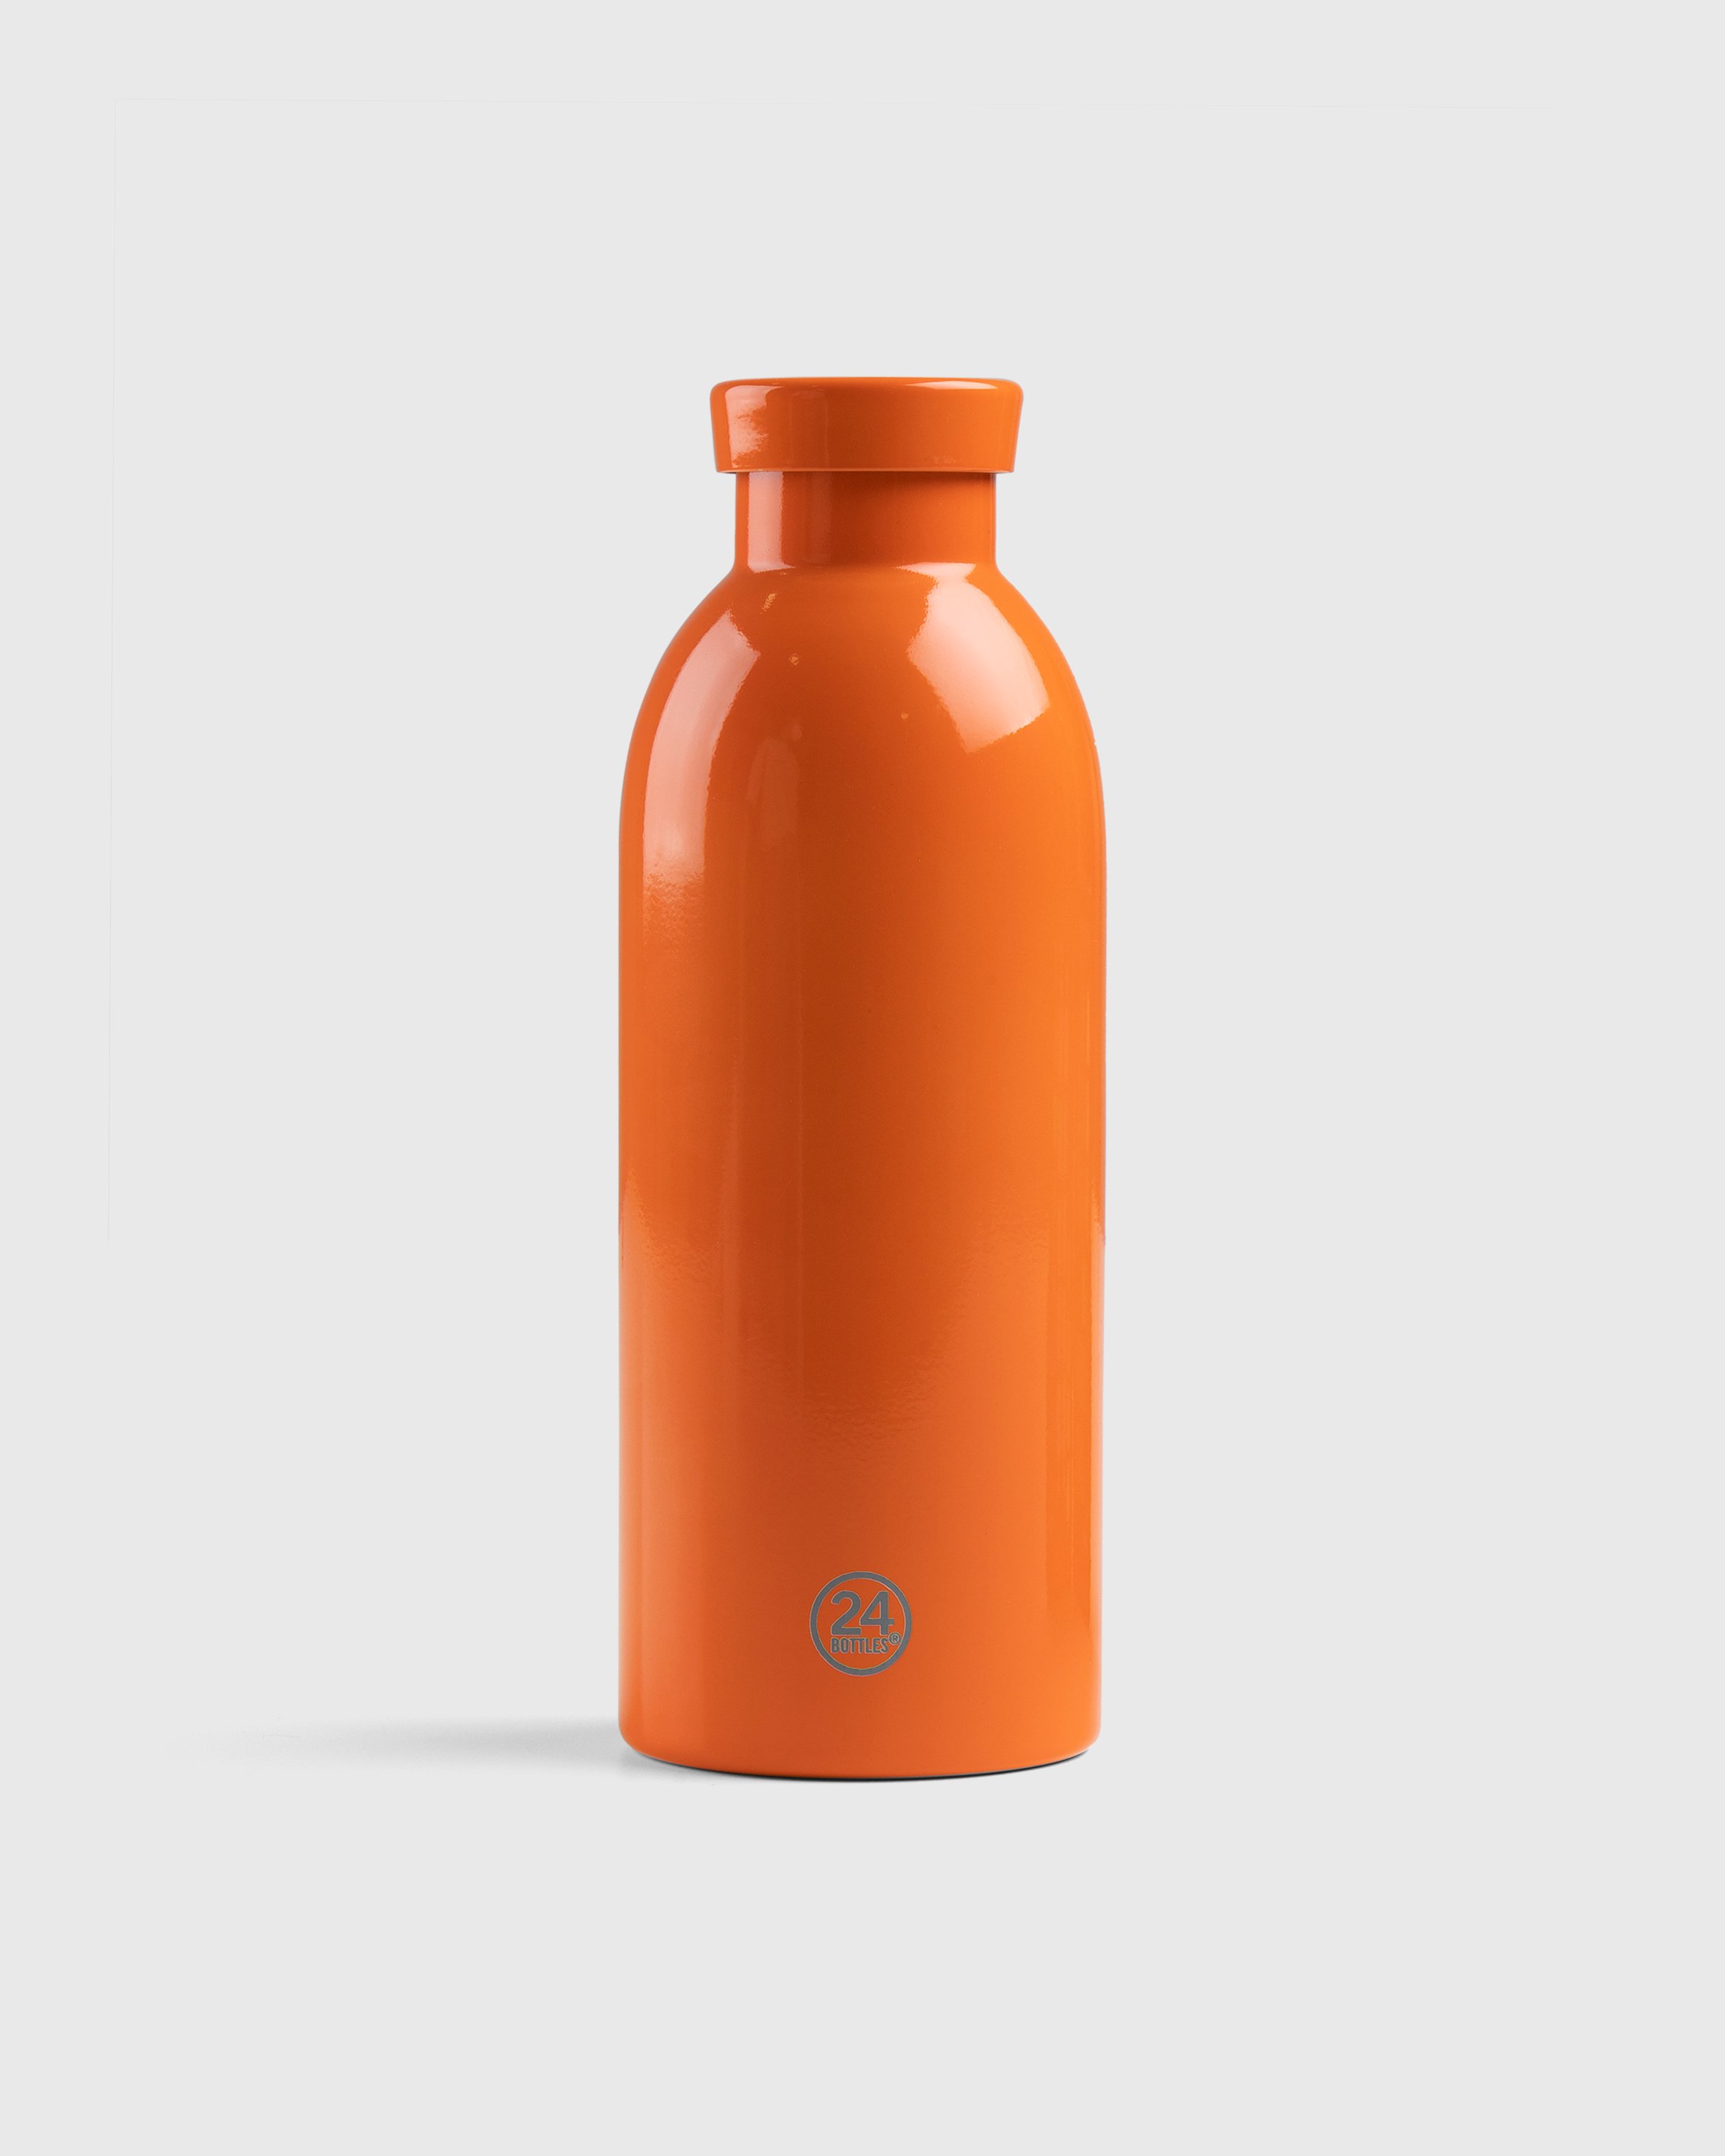 Stone Island - 97069 Clima Bottle Orange - Lifestyle - Orange - Image 2